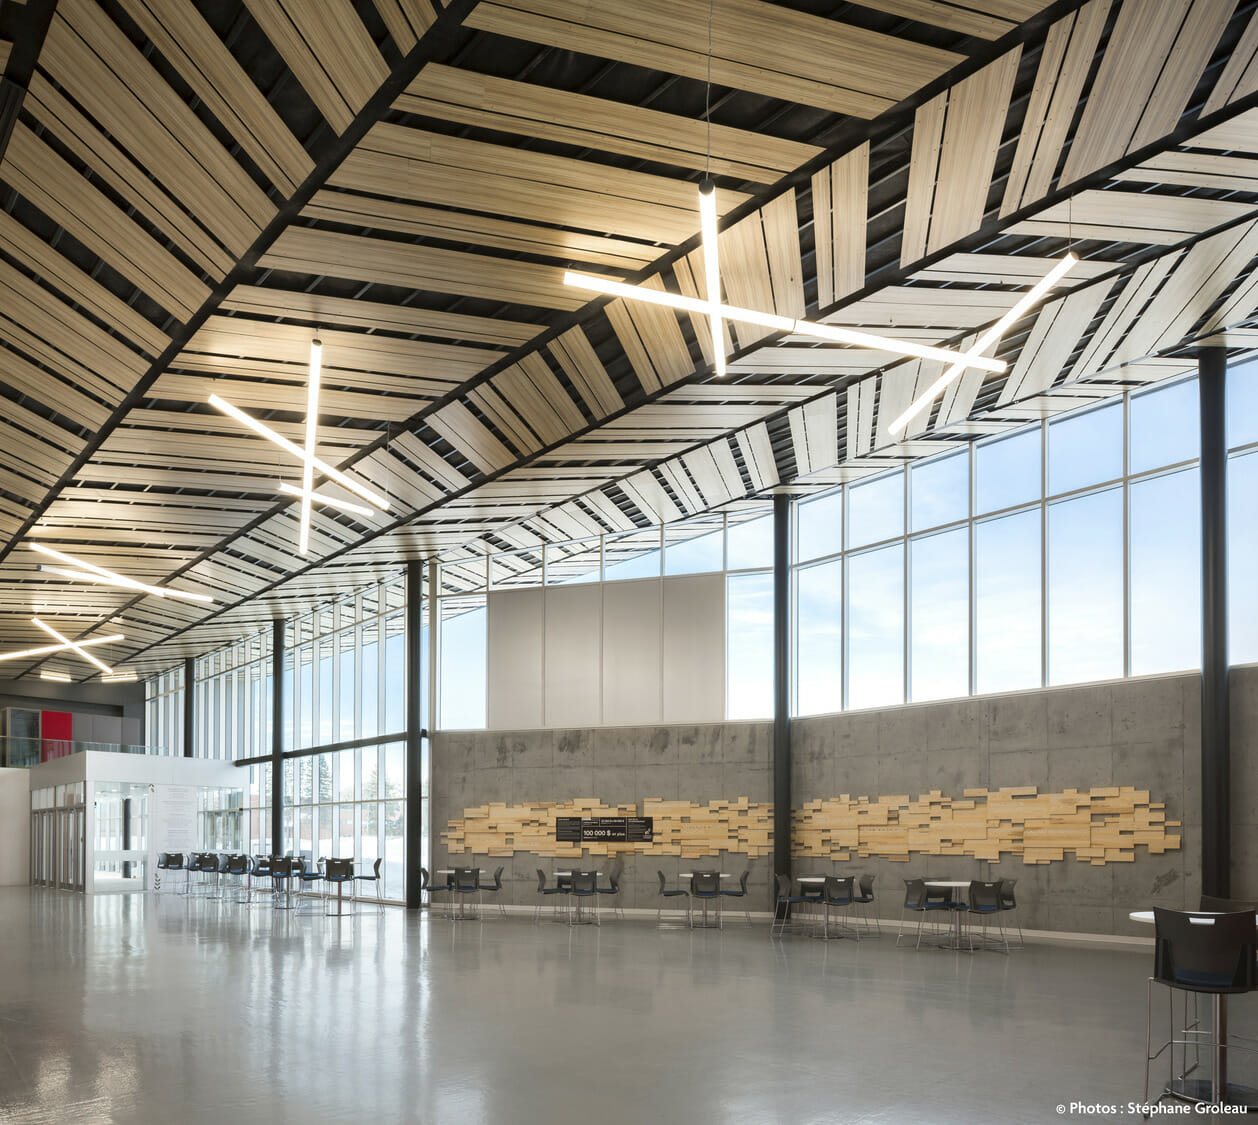 L'intérieur d'un aéroport avec un plafond en bois.